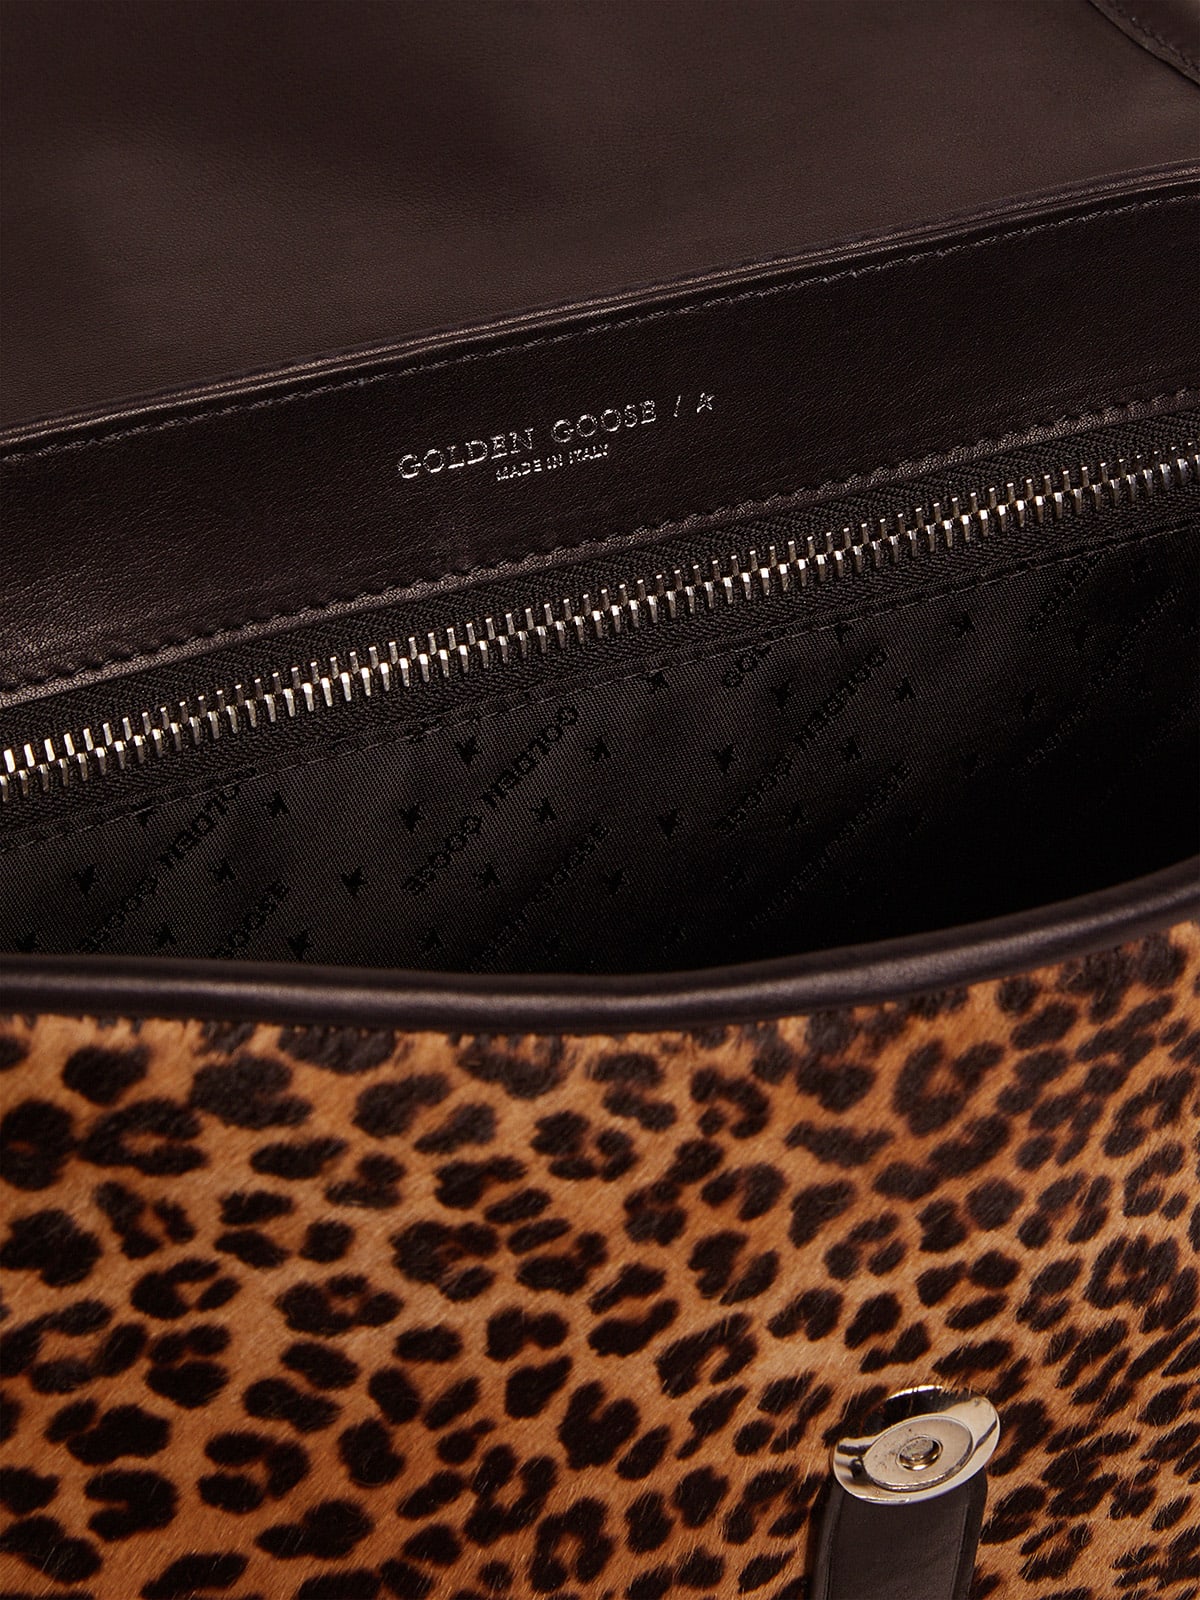 Golden Goose - Bolso Rodeo Bag mediano de piel negra y efecto potro con estampado de leopardo in 